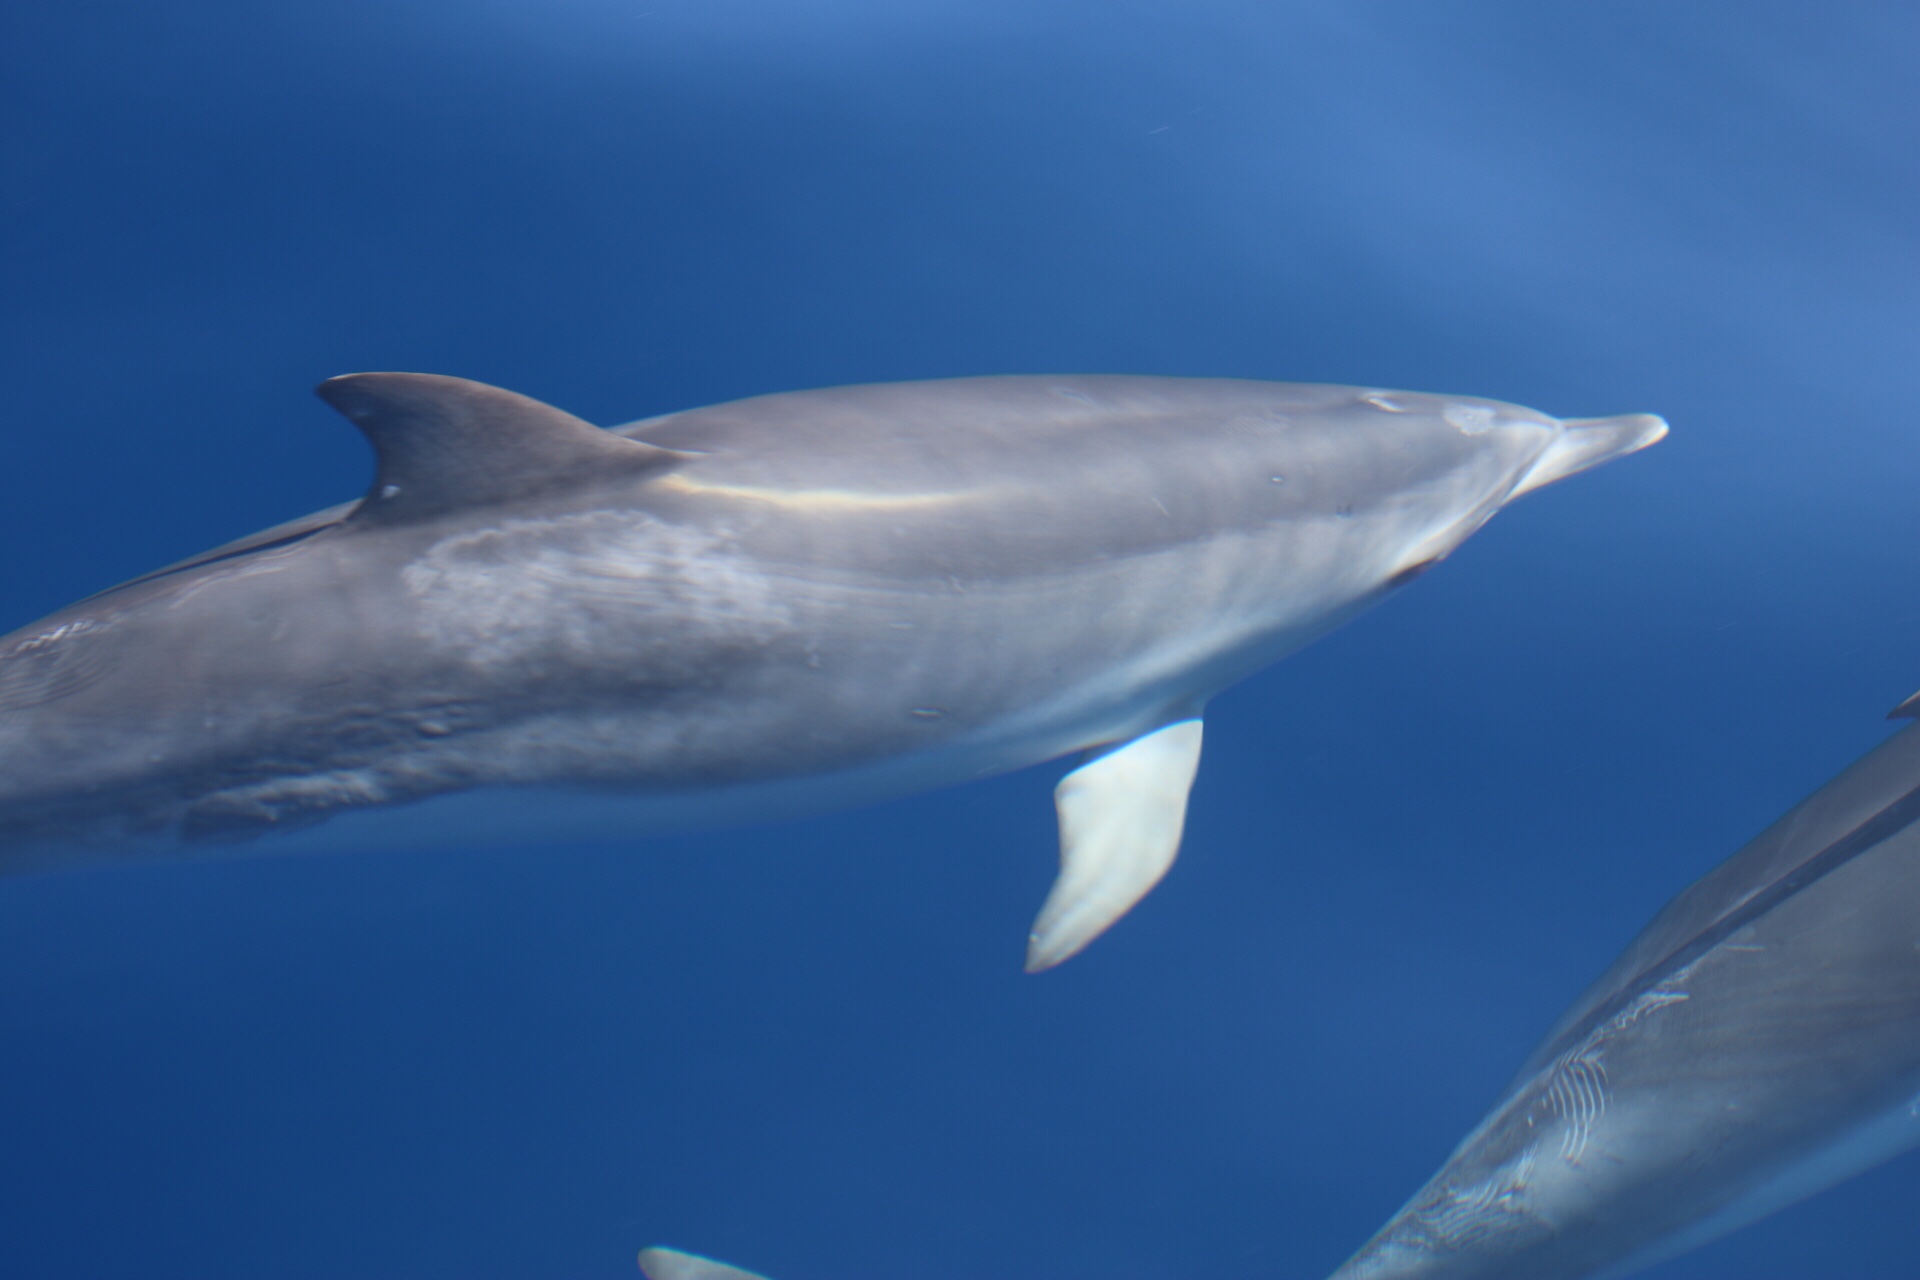 obserwacja delfinów, rejs na delfiny, ocean atlantycki, wycieczki statkiem teneryfa, los cristianos, blog o dzikich zwierzętach, animalistka.pl